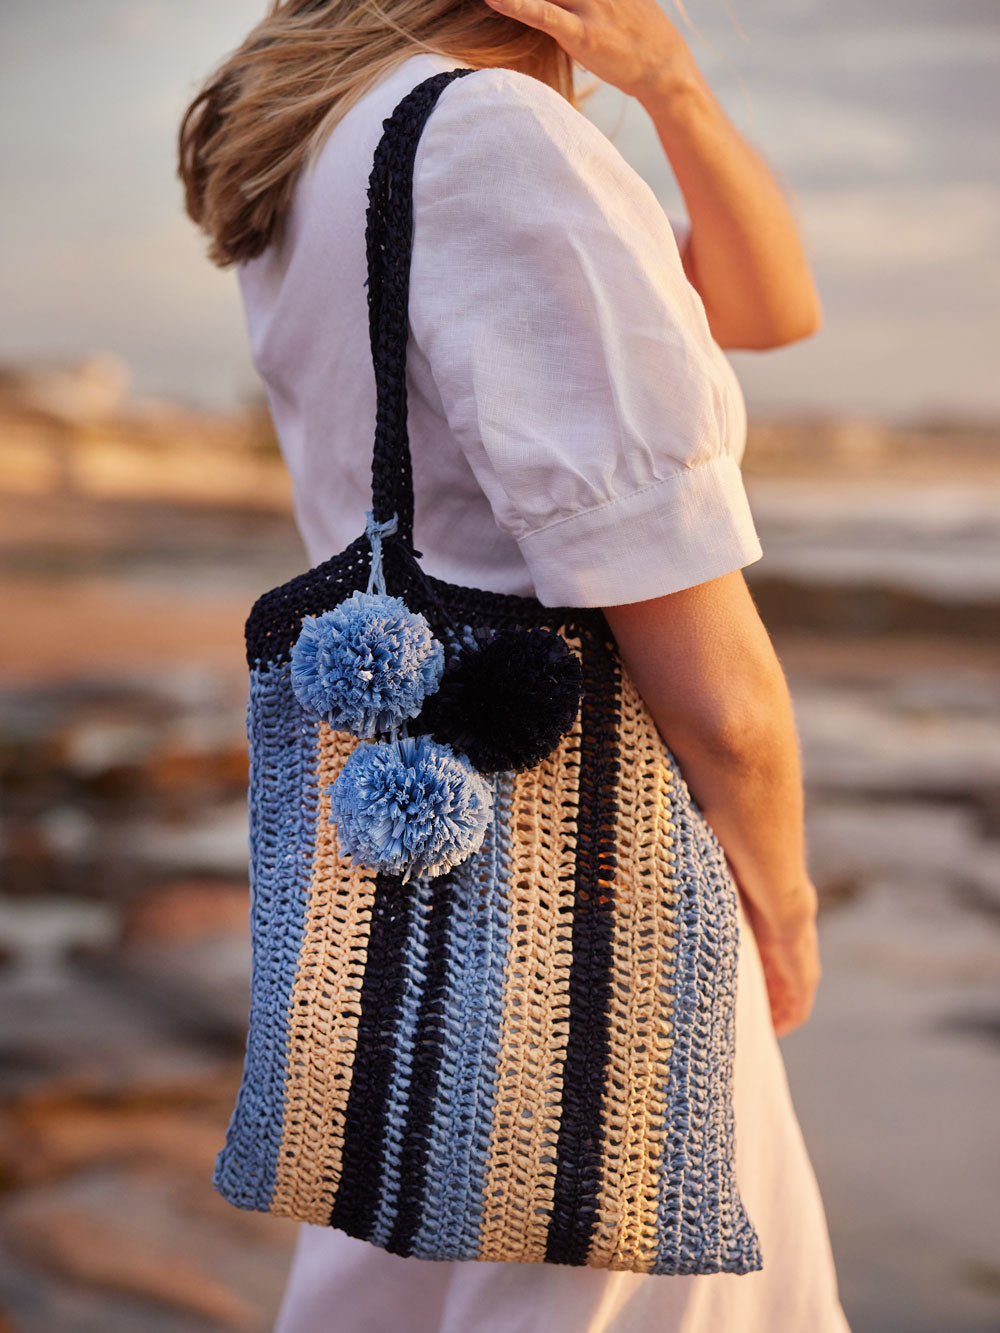 Crochet Bag Kit, Crochet Hat Kits